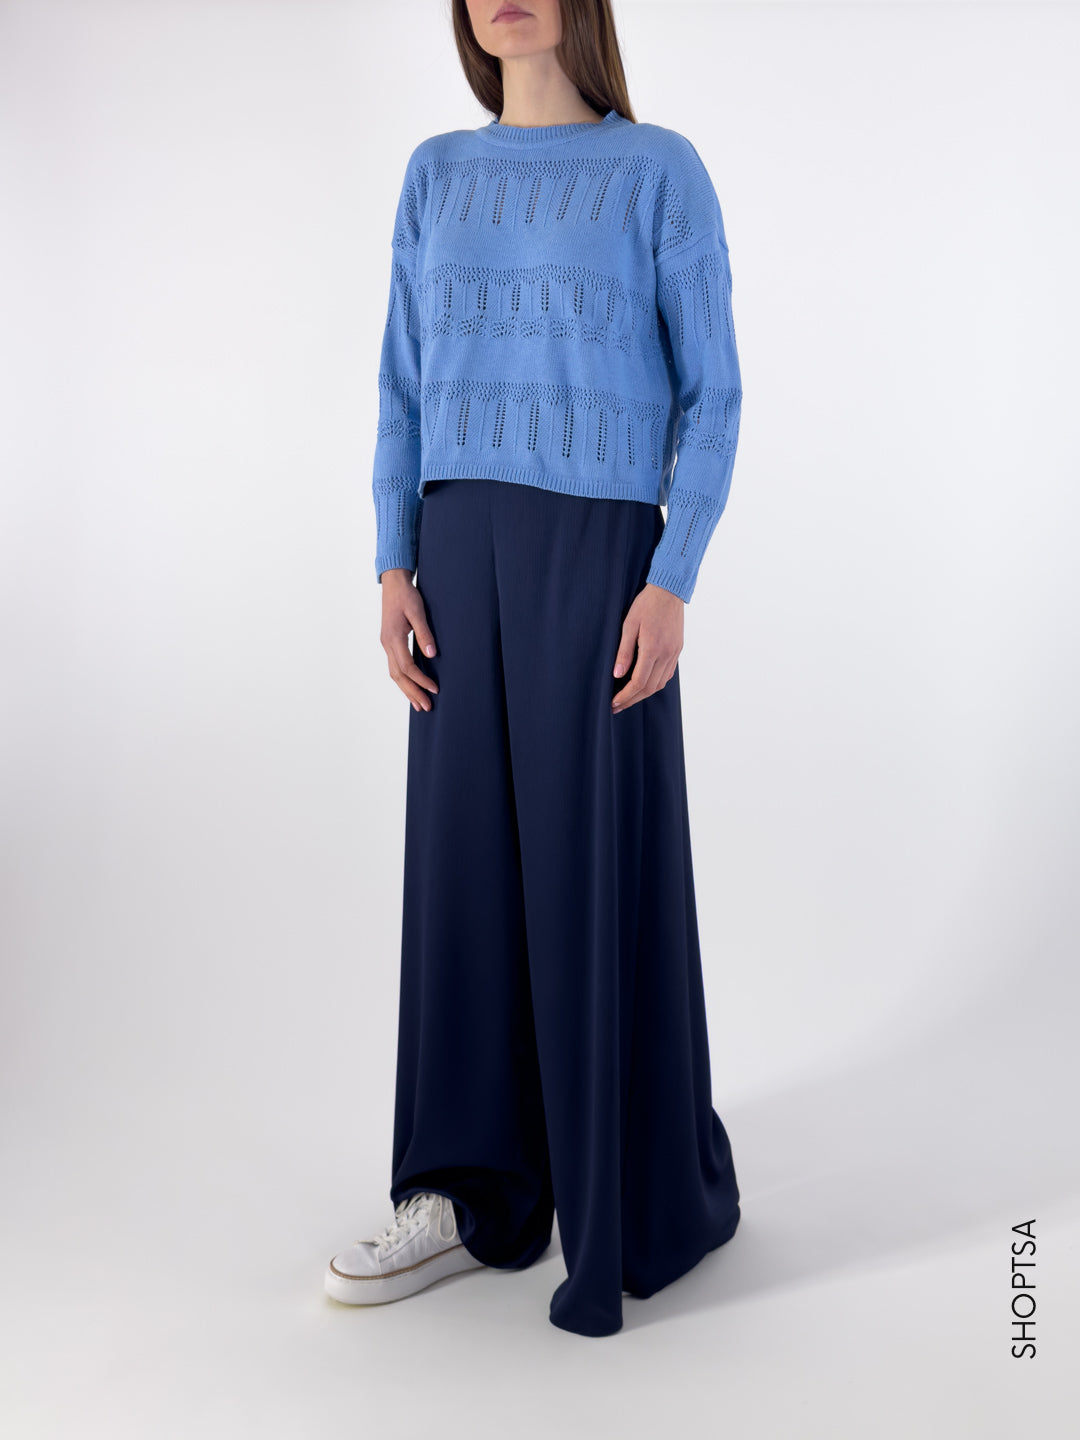 ADELFI cotton sweater - EMME Marella